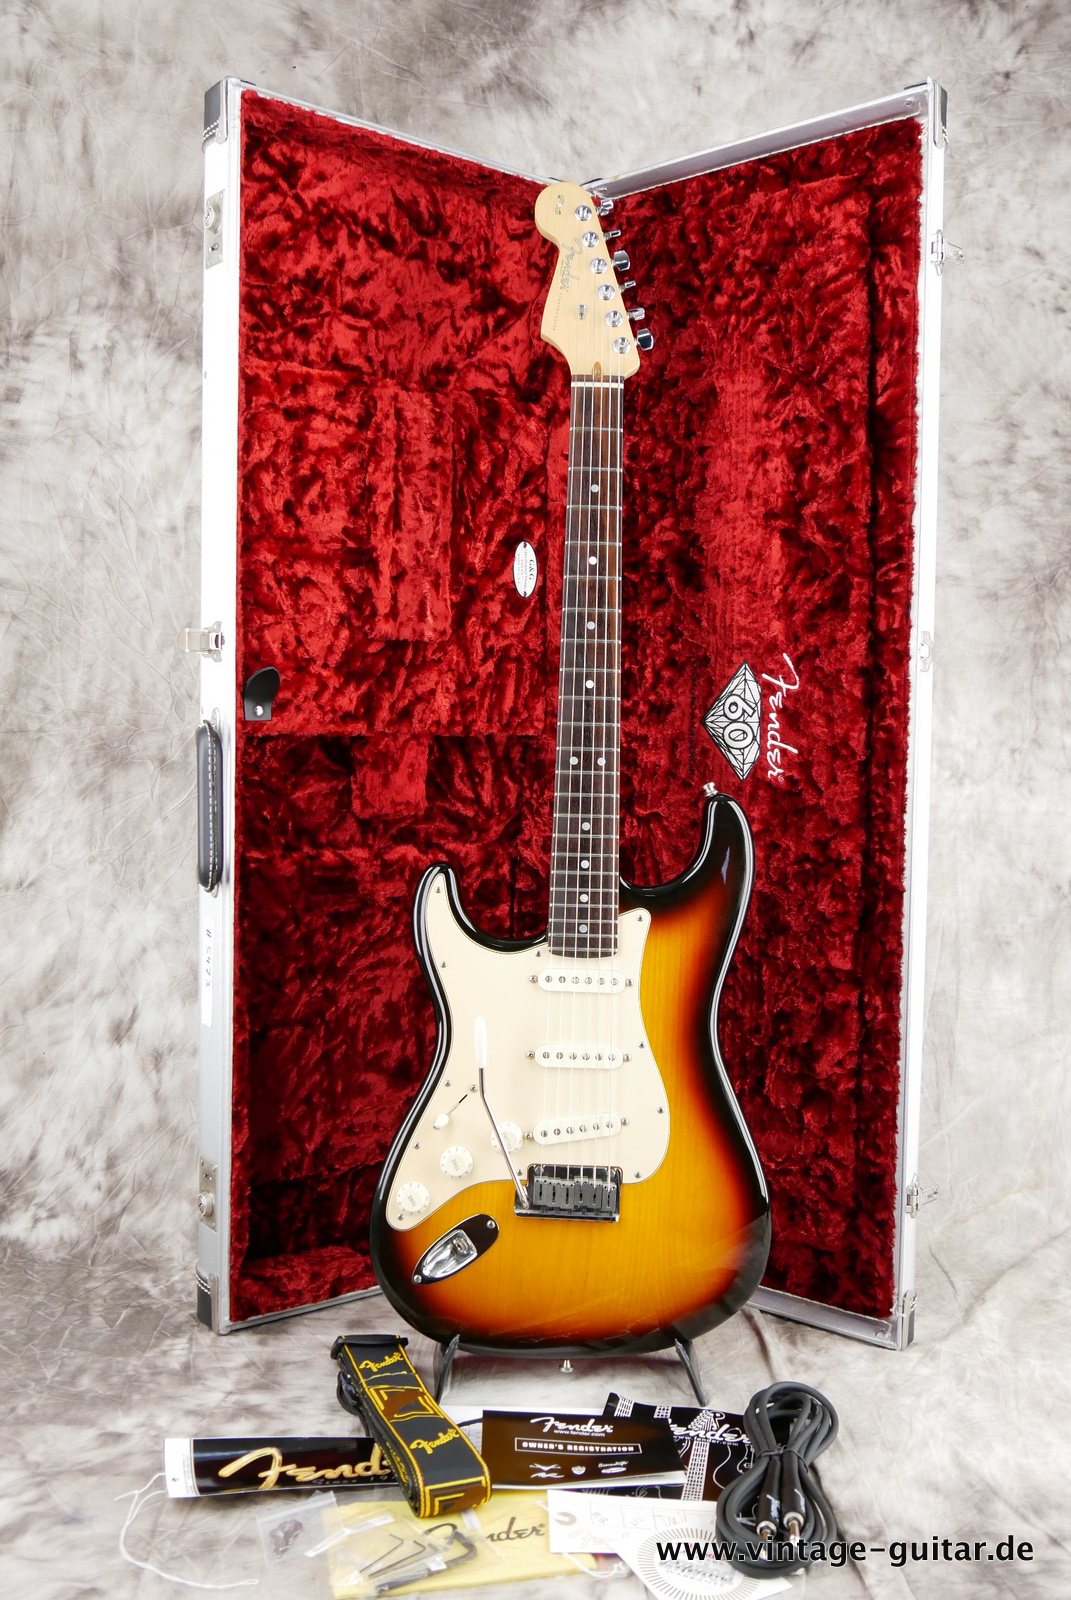 Fender_Stratocaster_American_Series_Diamond_Anniversary_60th_Left_handed_USA_sunburst-022.JPG